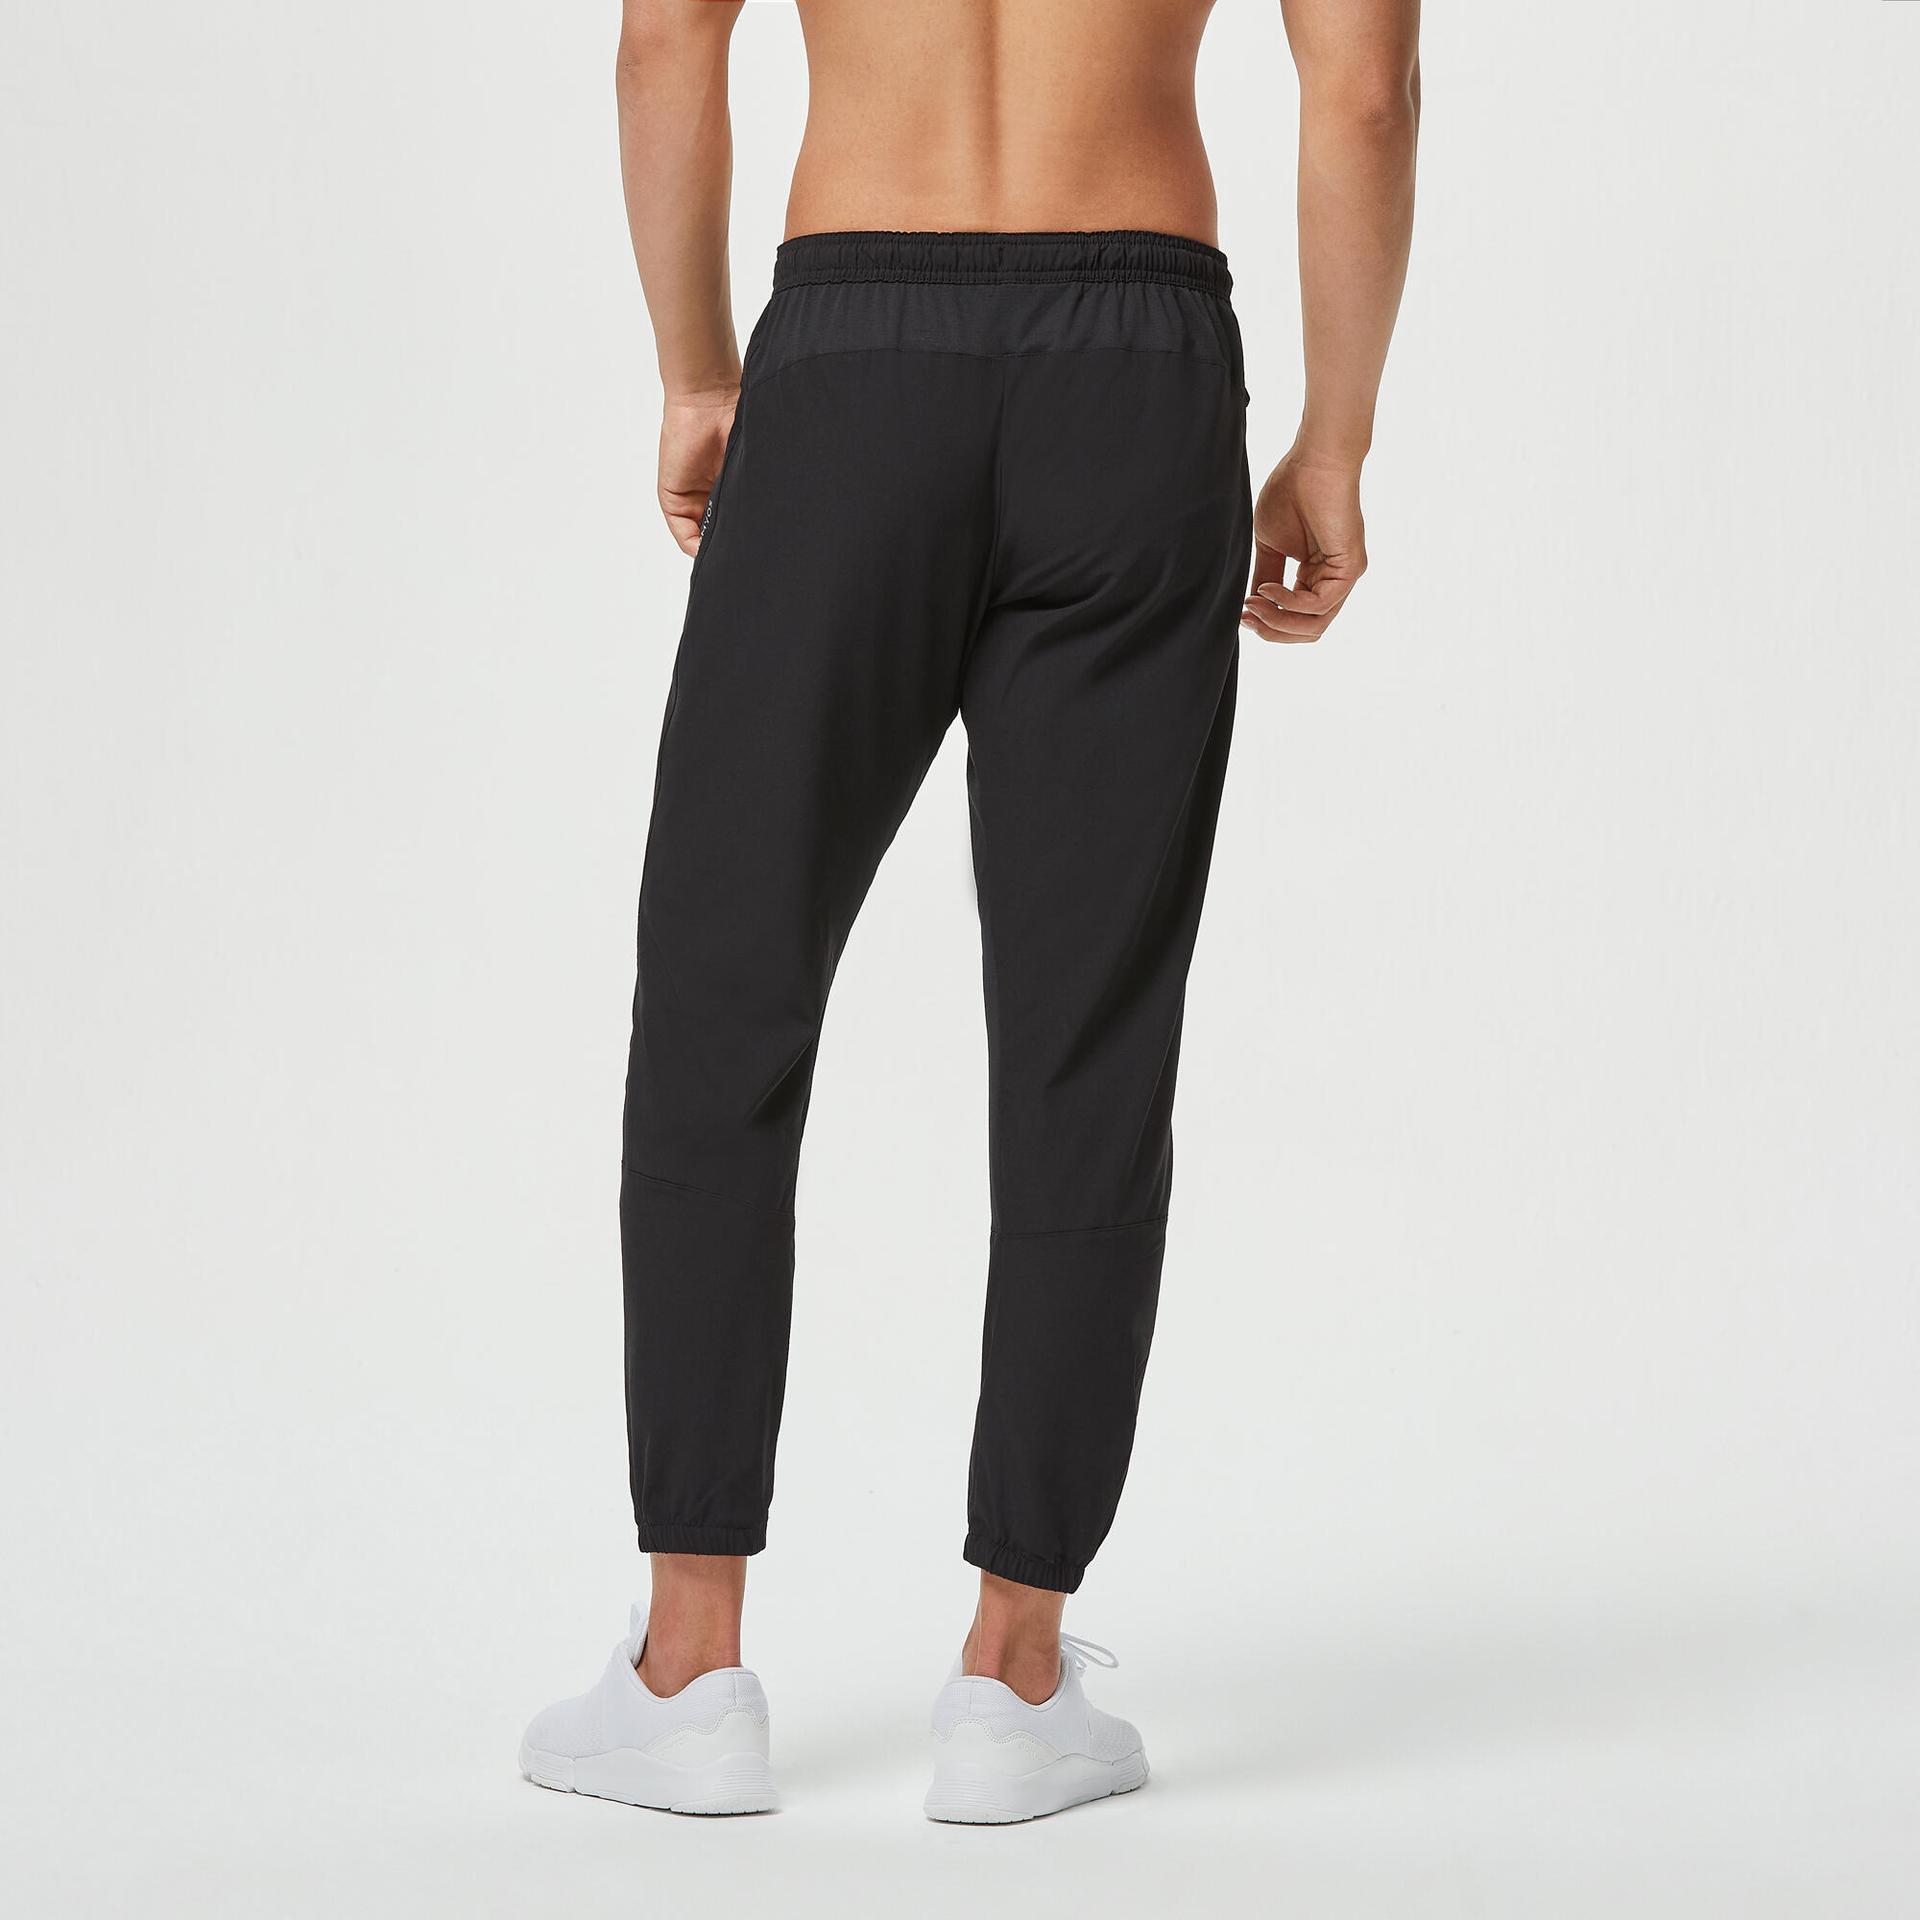 men gym track pants polyester slim fit fit 500 black